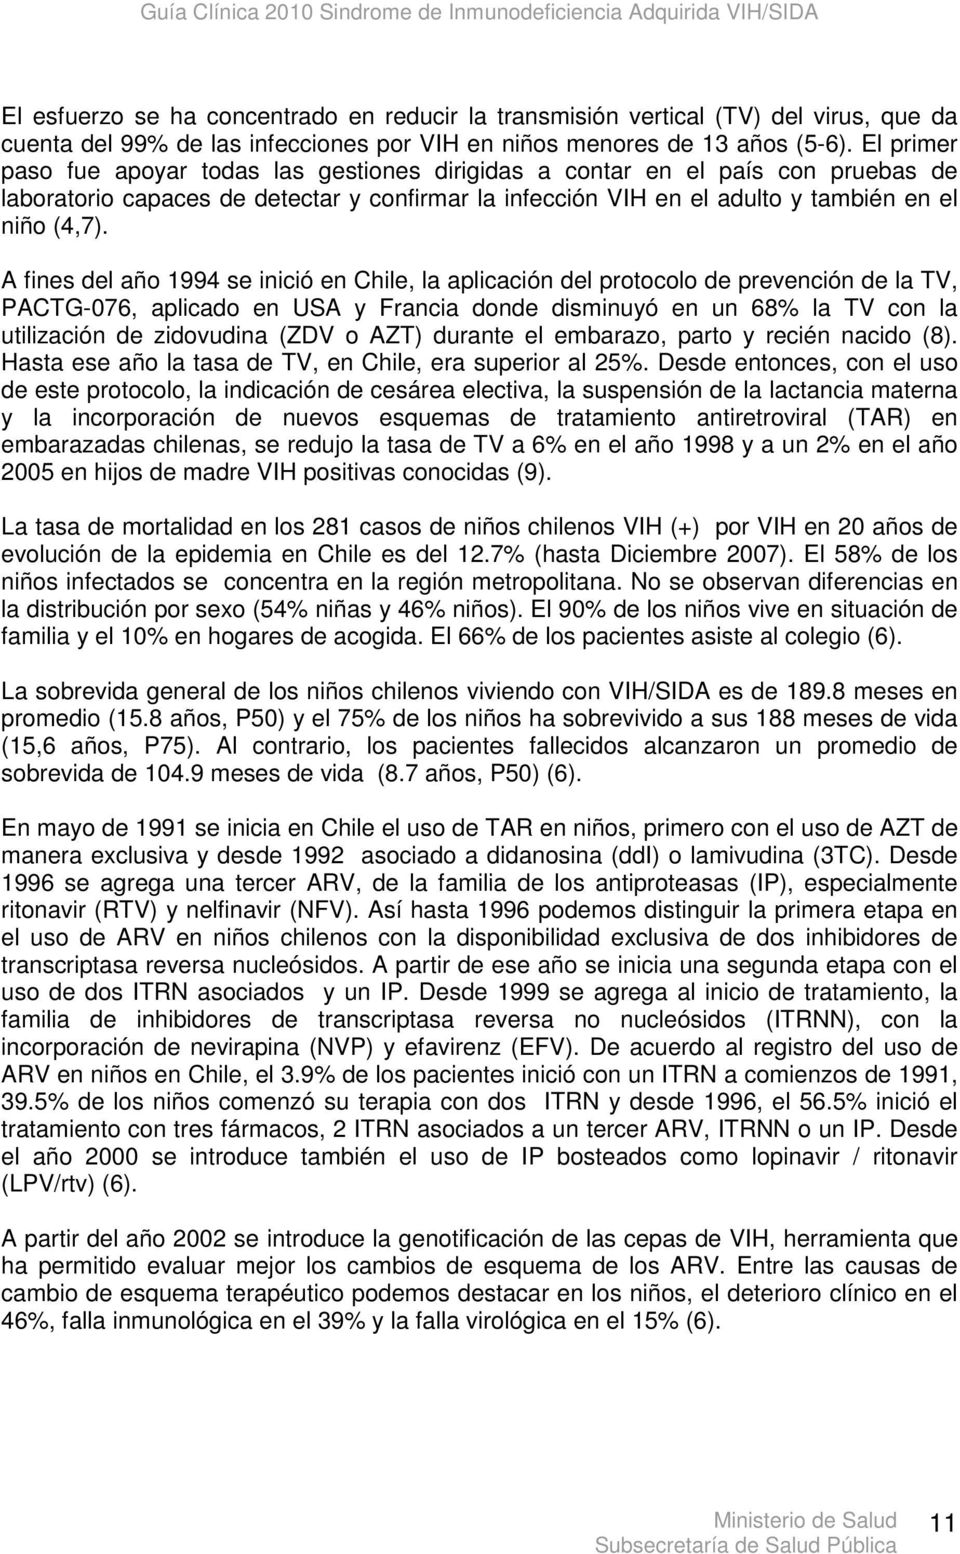 A fines del año 1994 se inició en Chile, la aplicación del protocolo de prevención de la TV, PACTG-076, aplicado en USA y Francia donde disminuyó en un 68% la TV con la utilización de zidovudina (ZDV